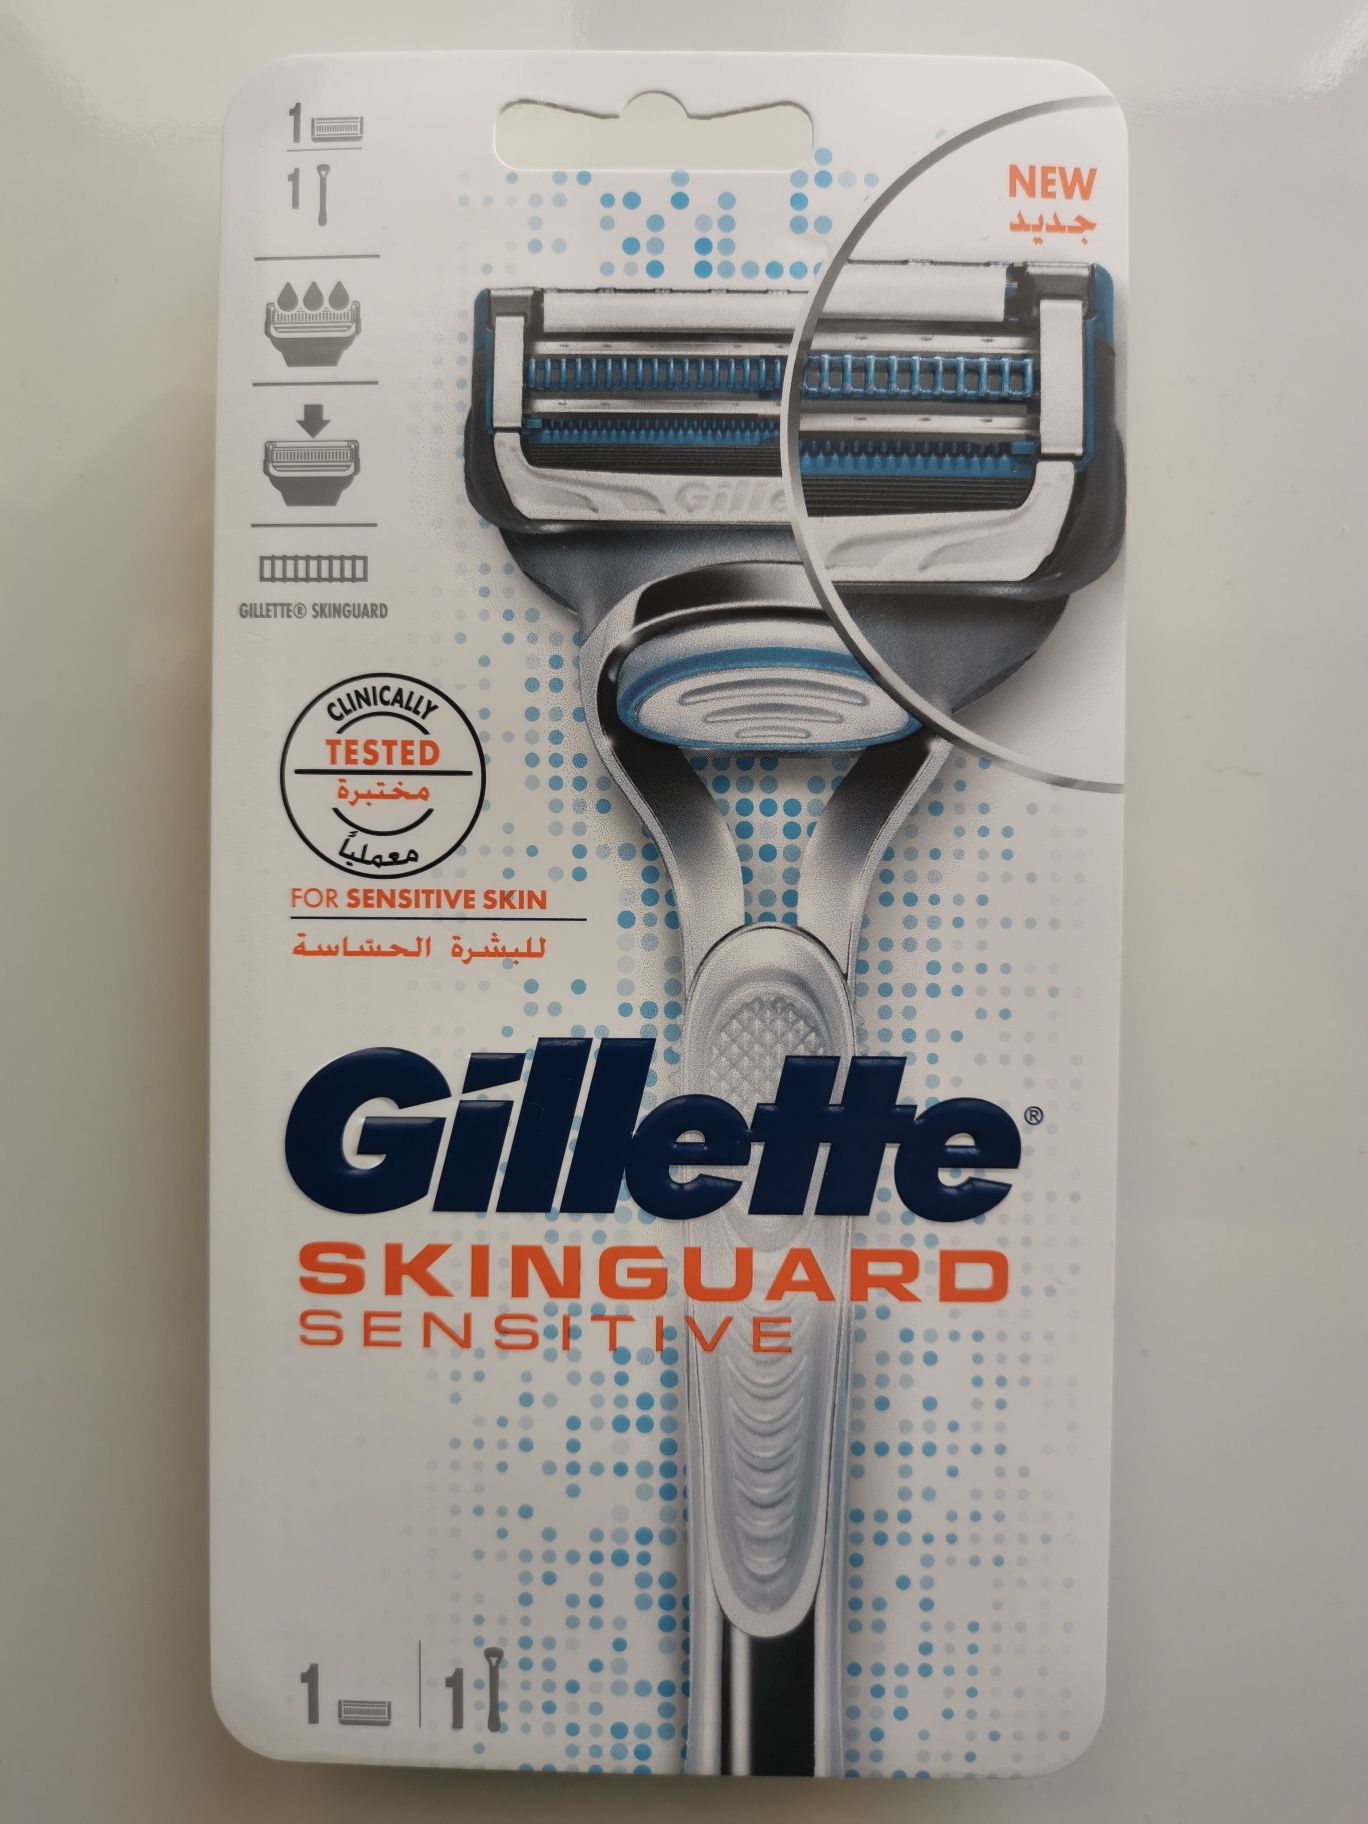 GILLETTE Skinguard Sensitive maszynka z 4 szt wkładów NOWE